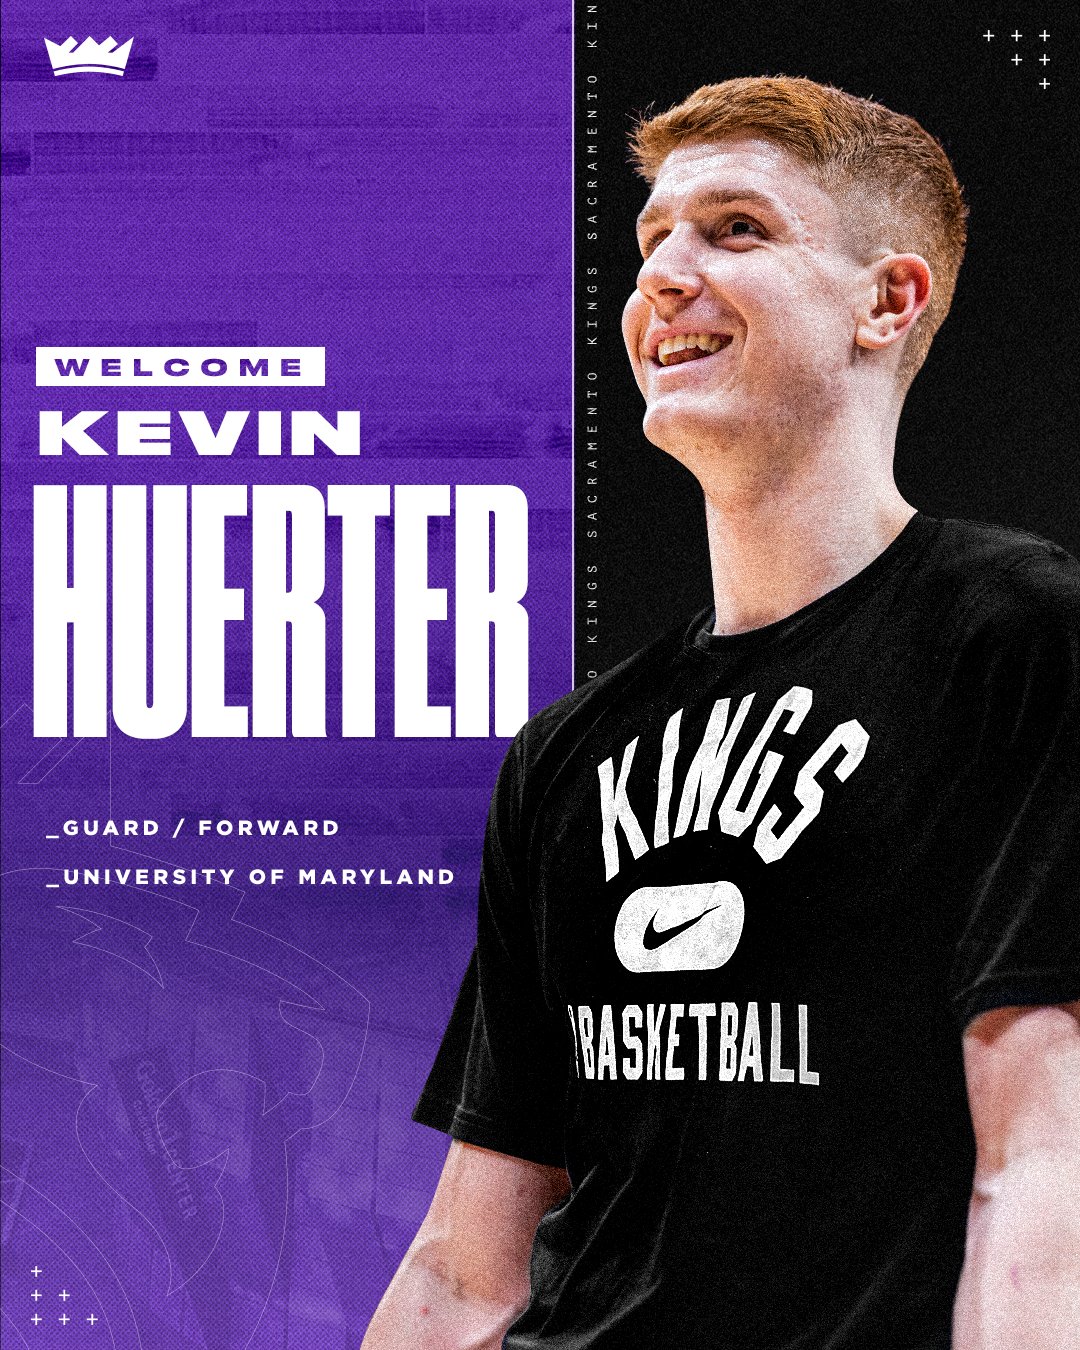 Sacramento Kings on X: 𝙁𝙀𝙀𝙇 𝙏𝙃𝙀 𝙍𝙊𝘼𝙍  Kevin Huerter ignites  Golden 1 Center with game-winner over Utah! 🎯👑  / 